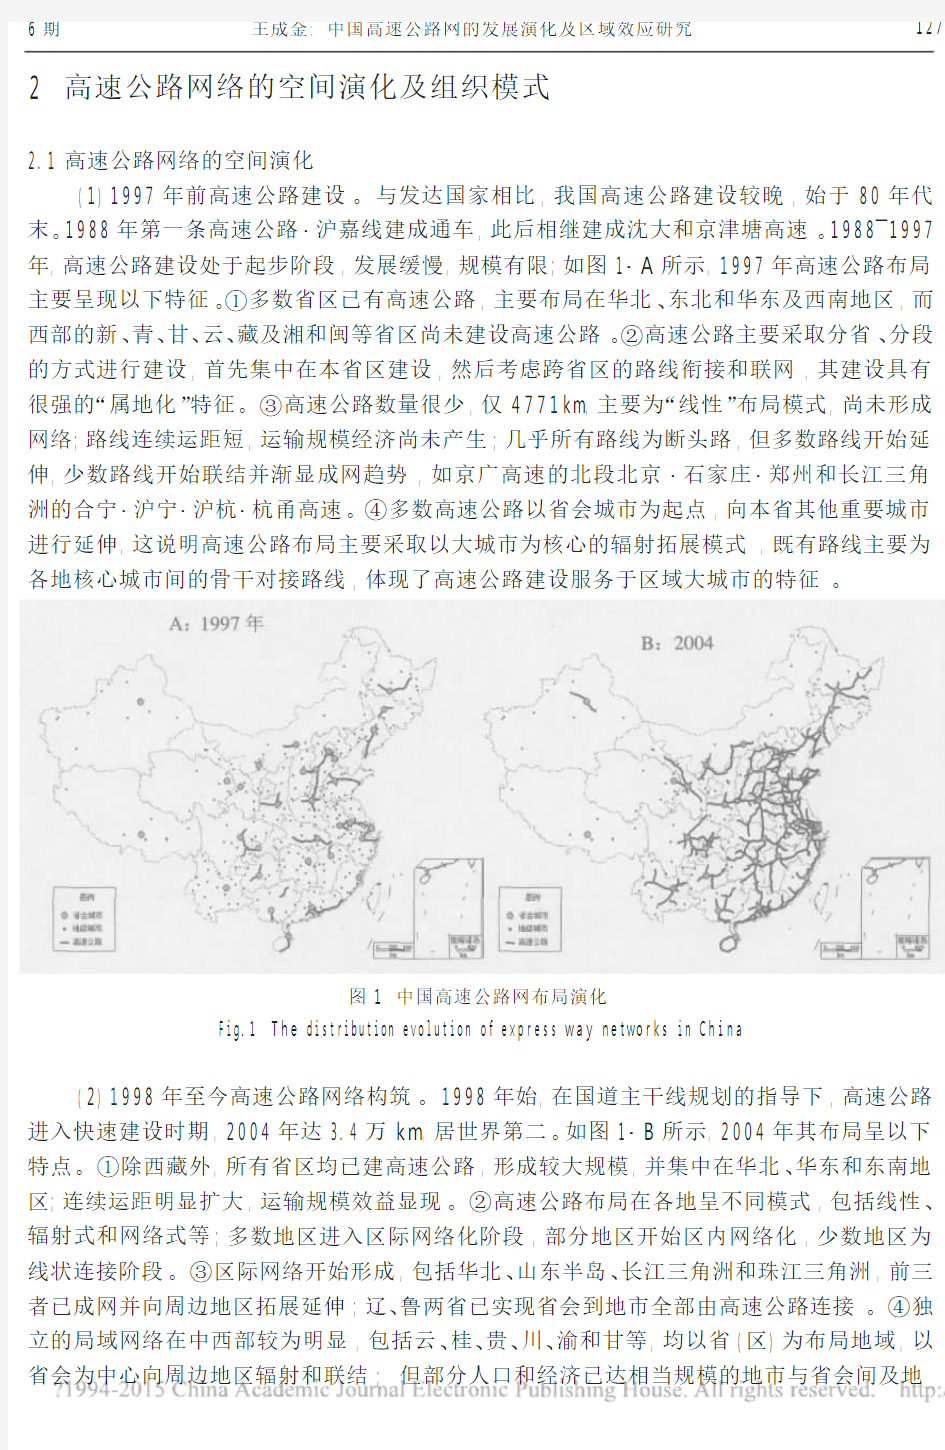 中国高速公路网的发展演化及区域效应研究_王成金